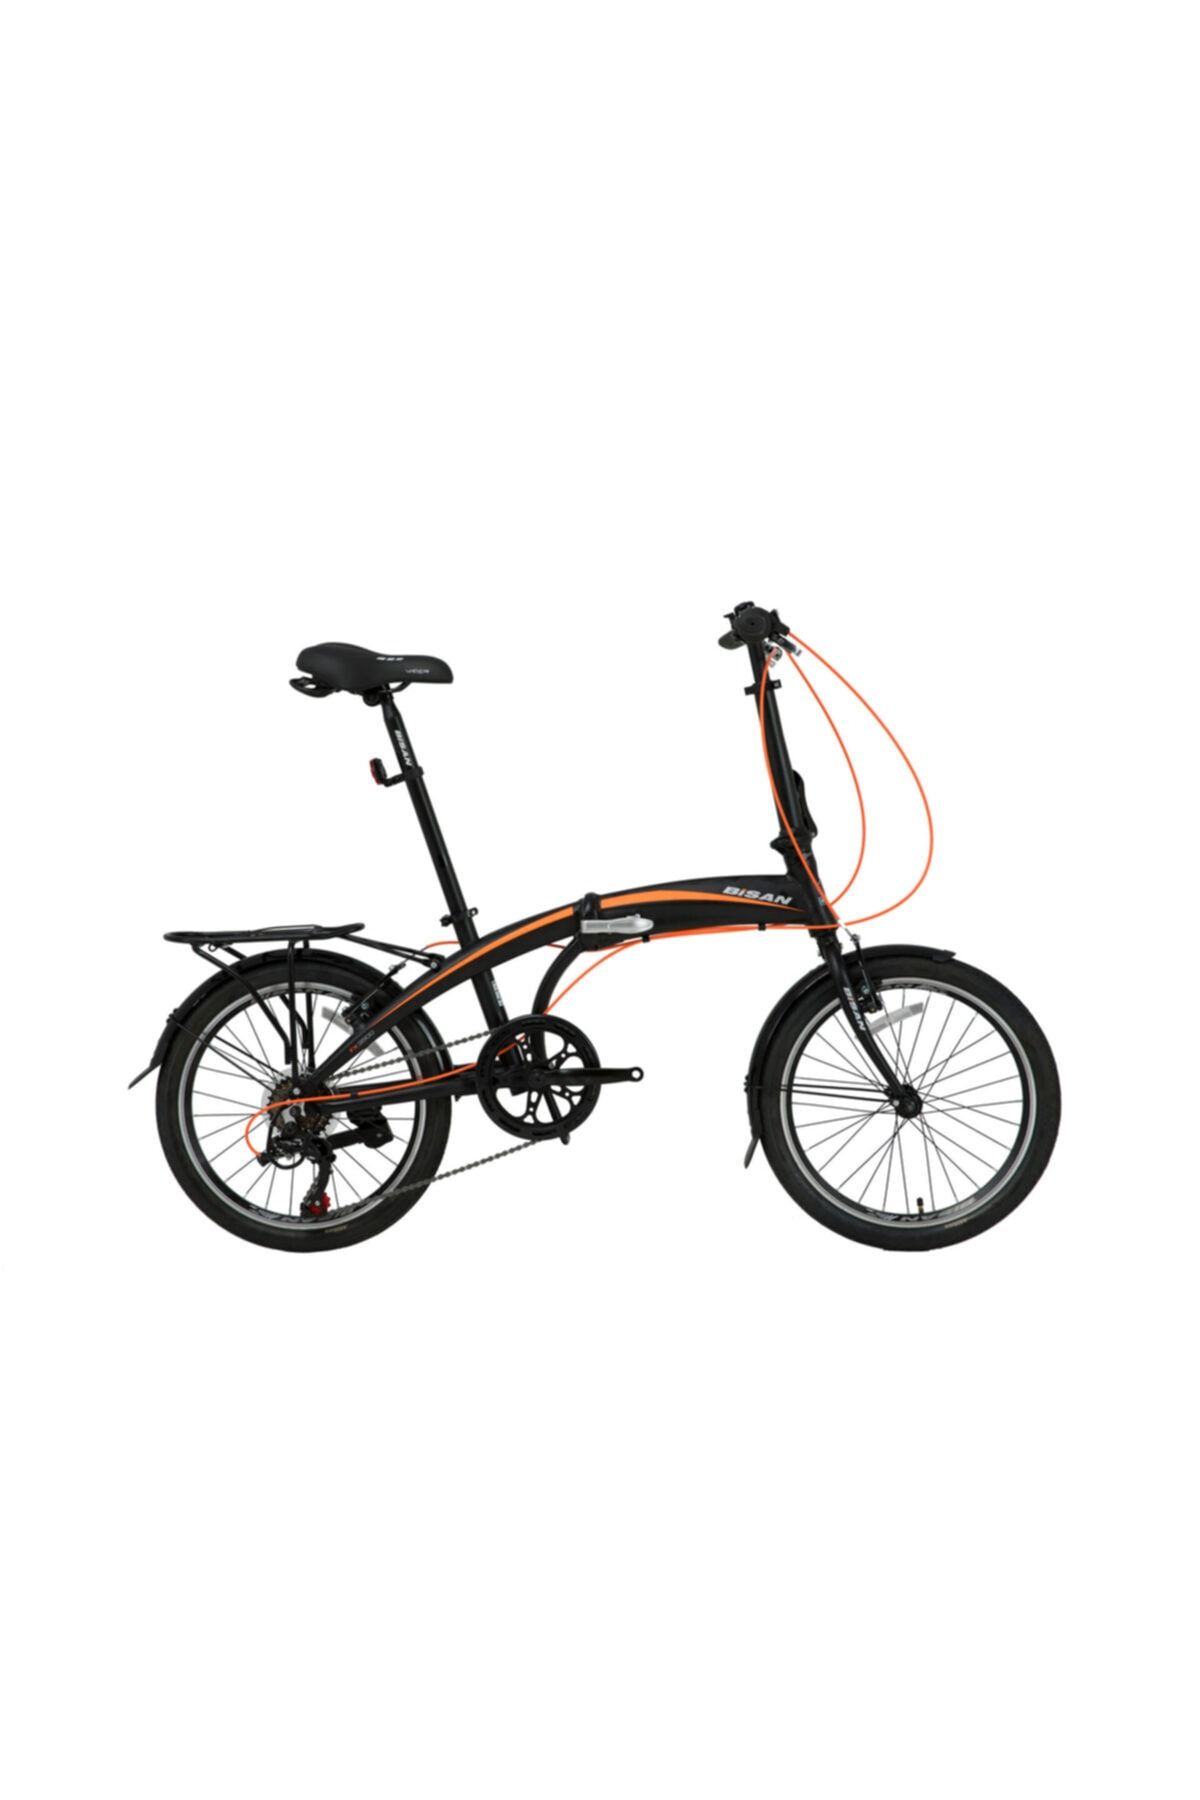 Bisan Fx 3500 Trn 2021 Katlanır Bisiklet - Turuncu